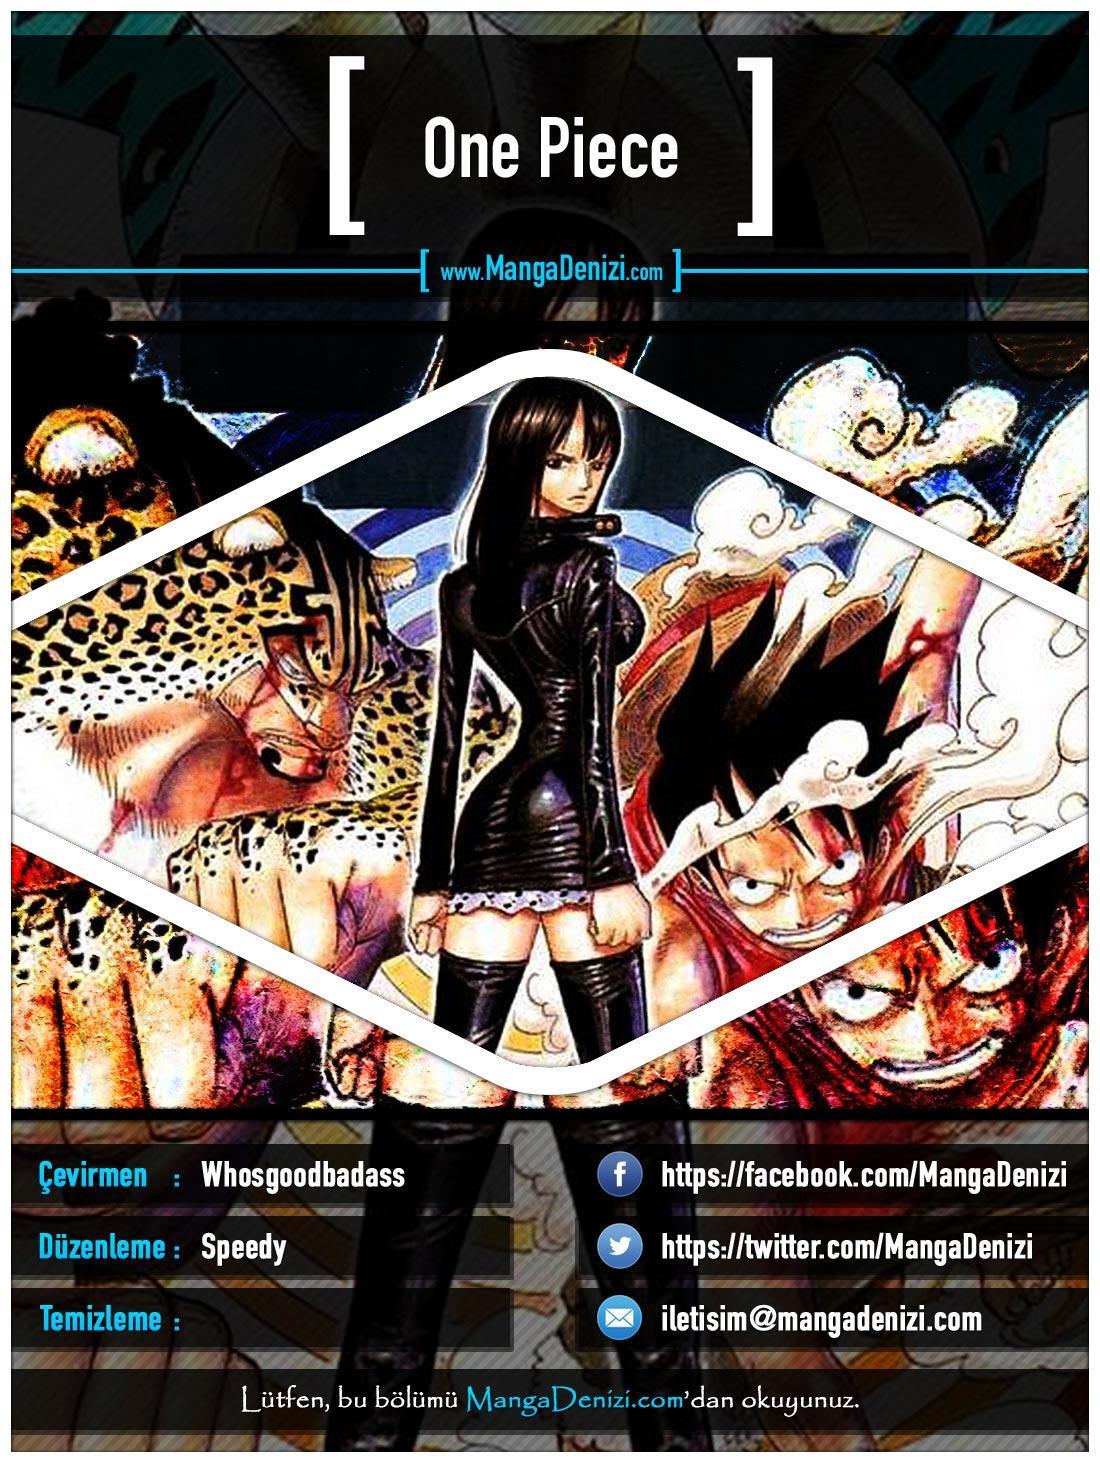 One Piece [Renkli] mangasının 0406 bölümünün 1. sayfasını okuyorsunuz.